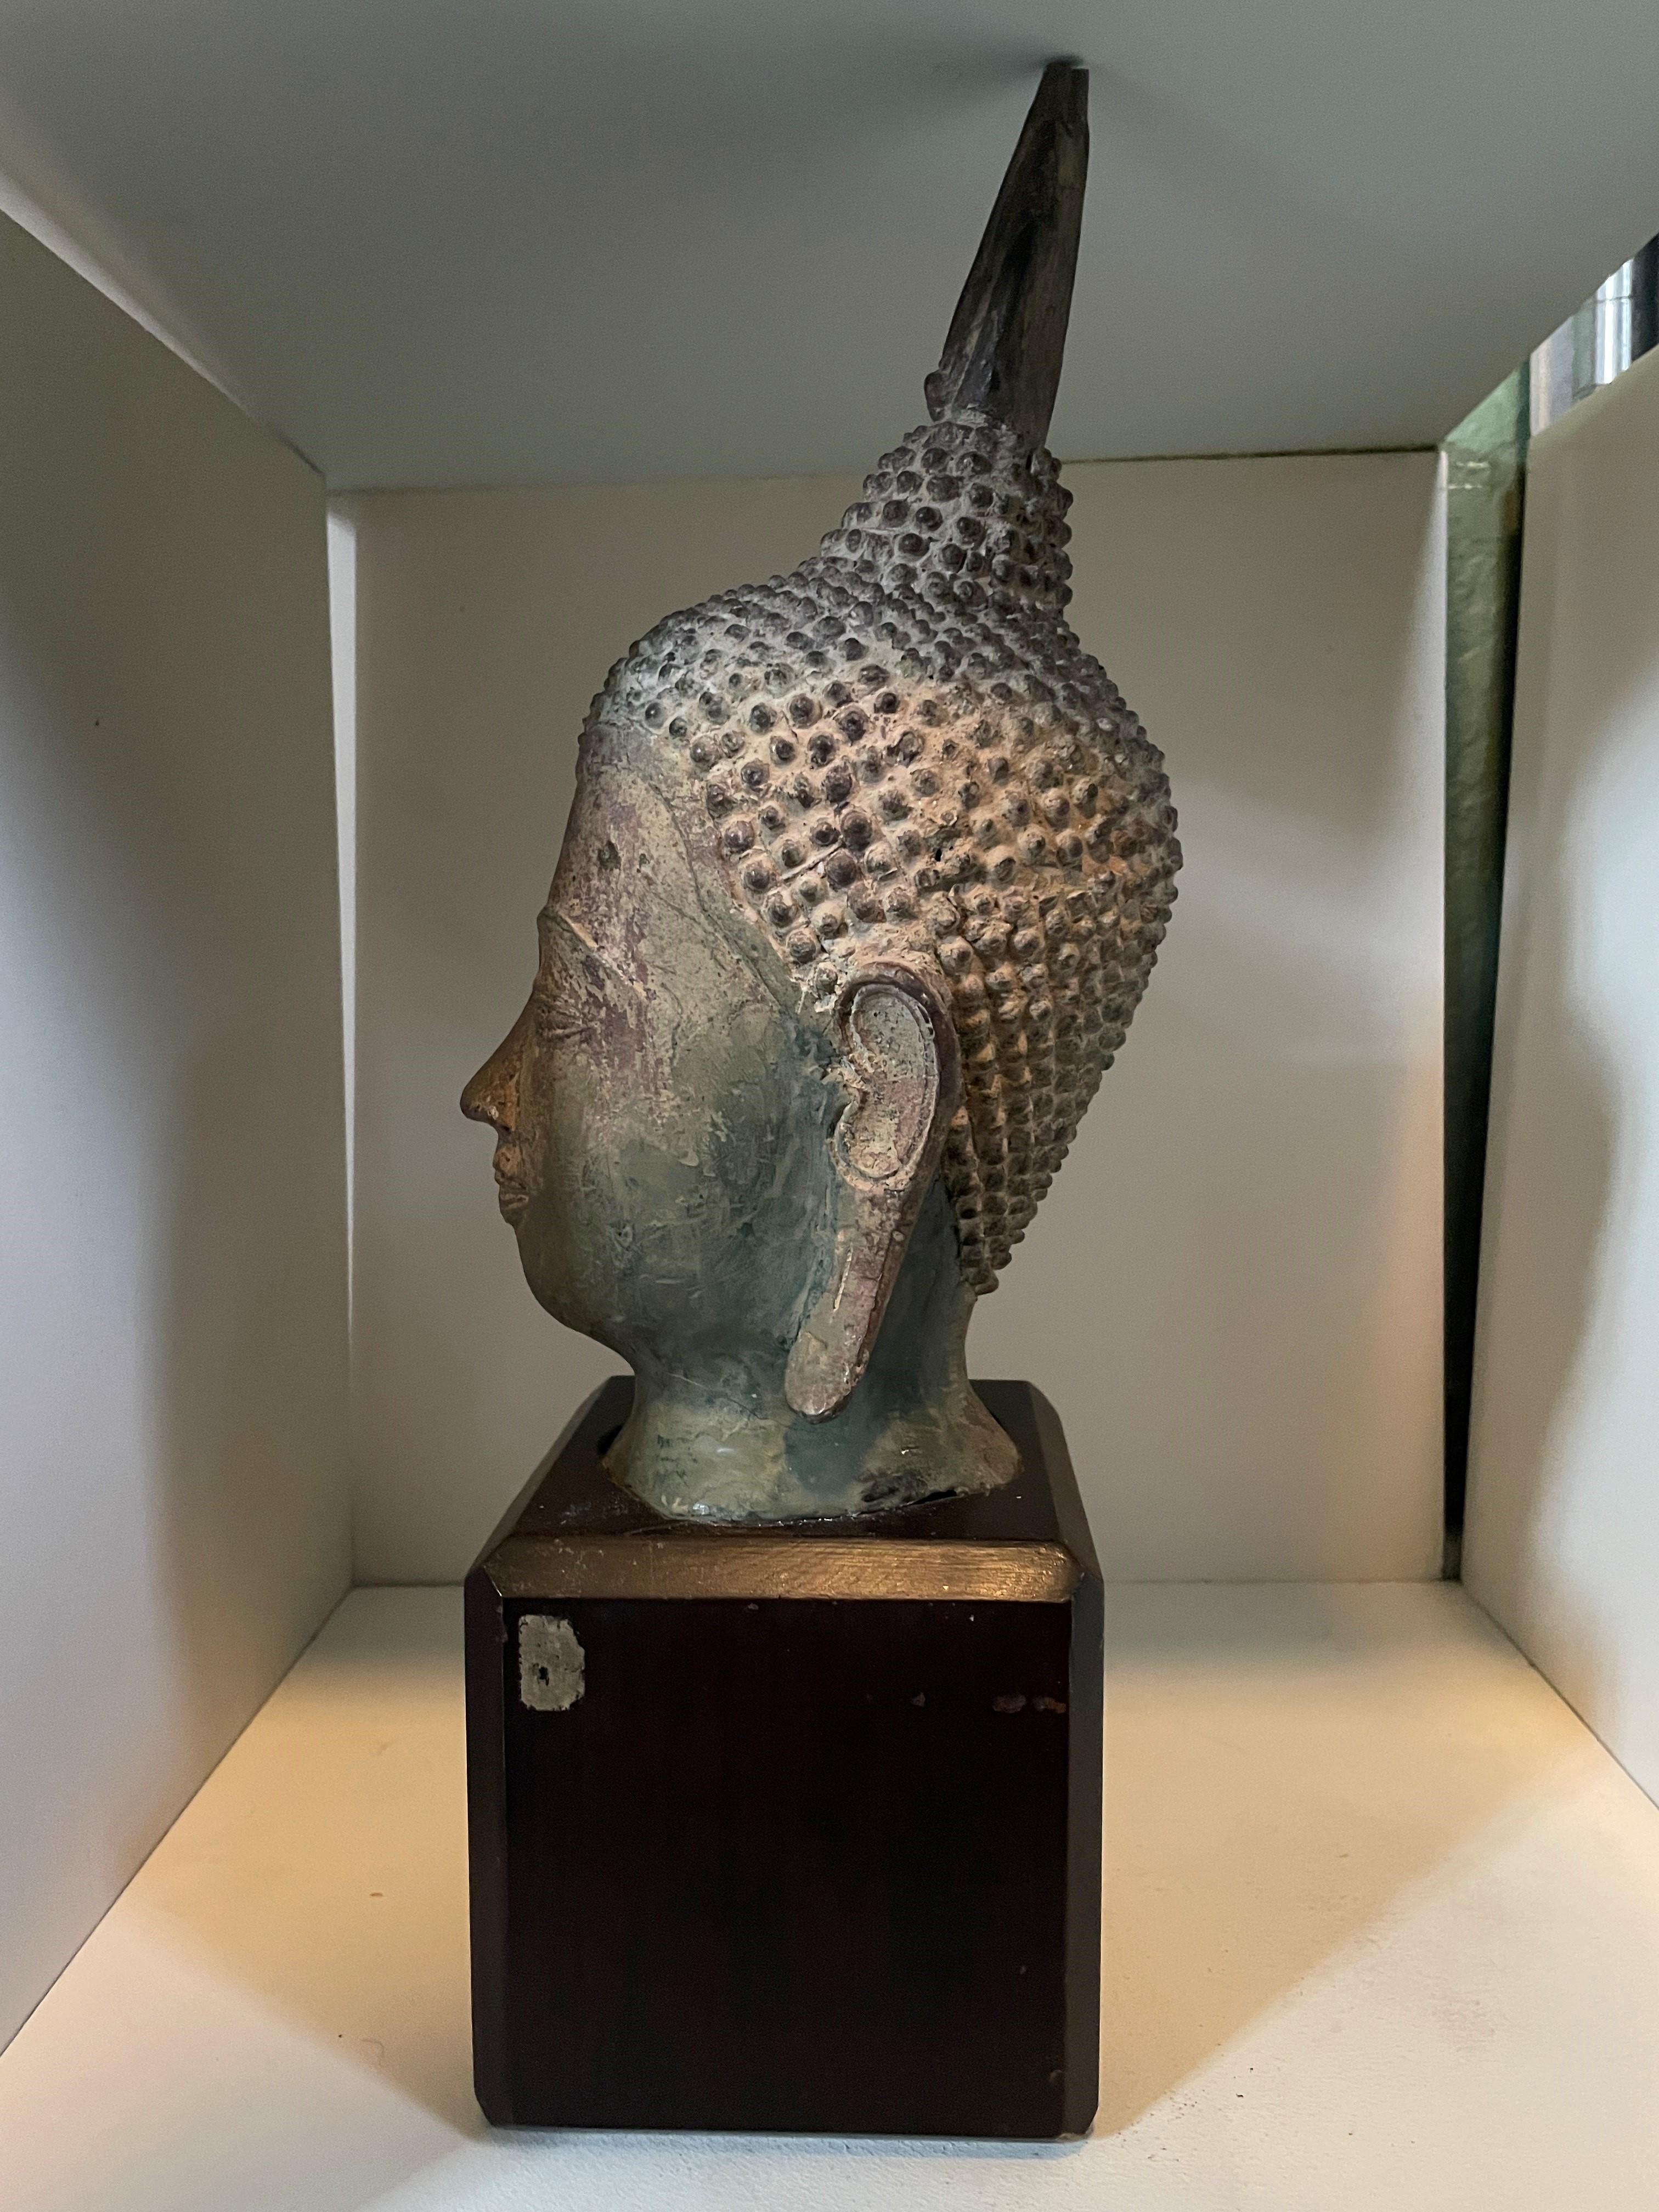 Antike Keramik / Keramik-Modell von Buddhas Kopf auf massivem Holzblock mit abgeschrägten Kanten montiert. In schönen Vintage-Zustand mit all-over Patina und Verschleiß an den eigentlichen Kopf. Wahrscheinlich südostasiatischen Ursprungs;